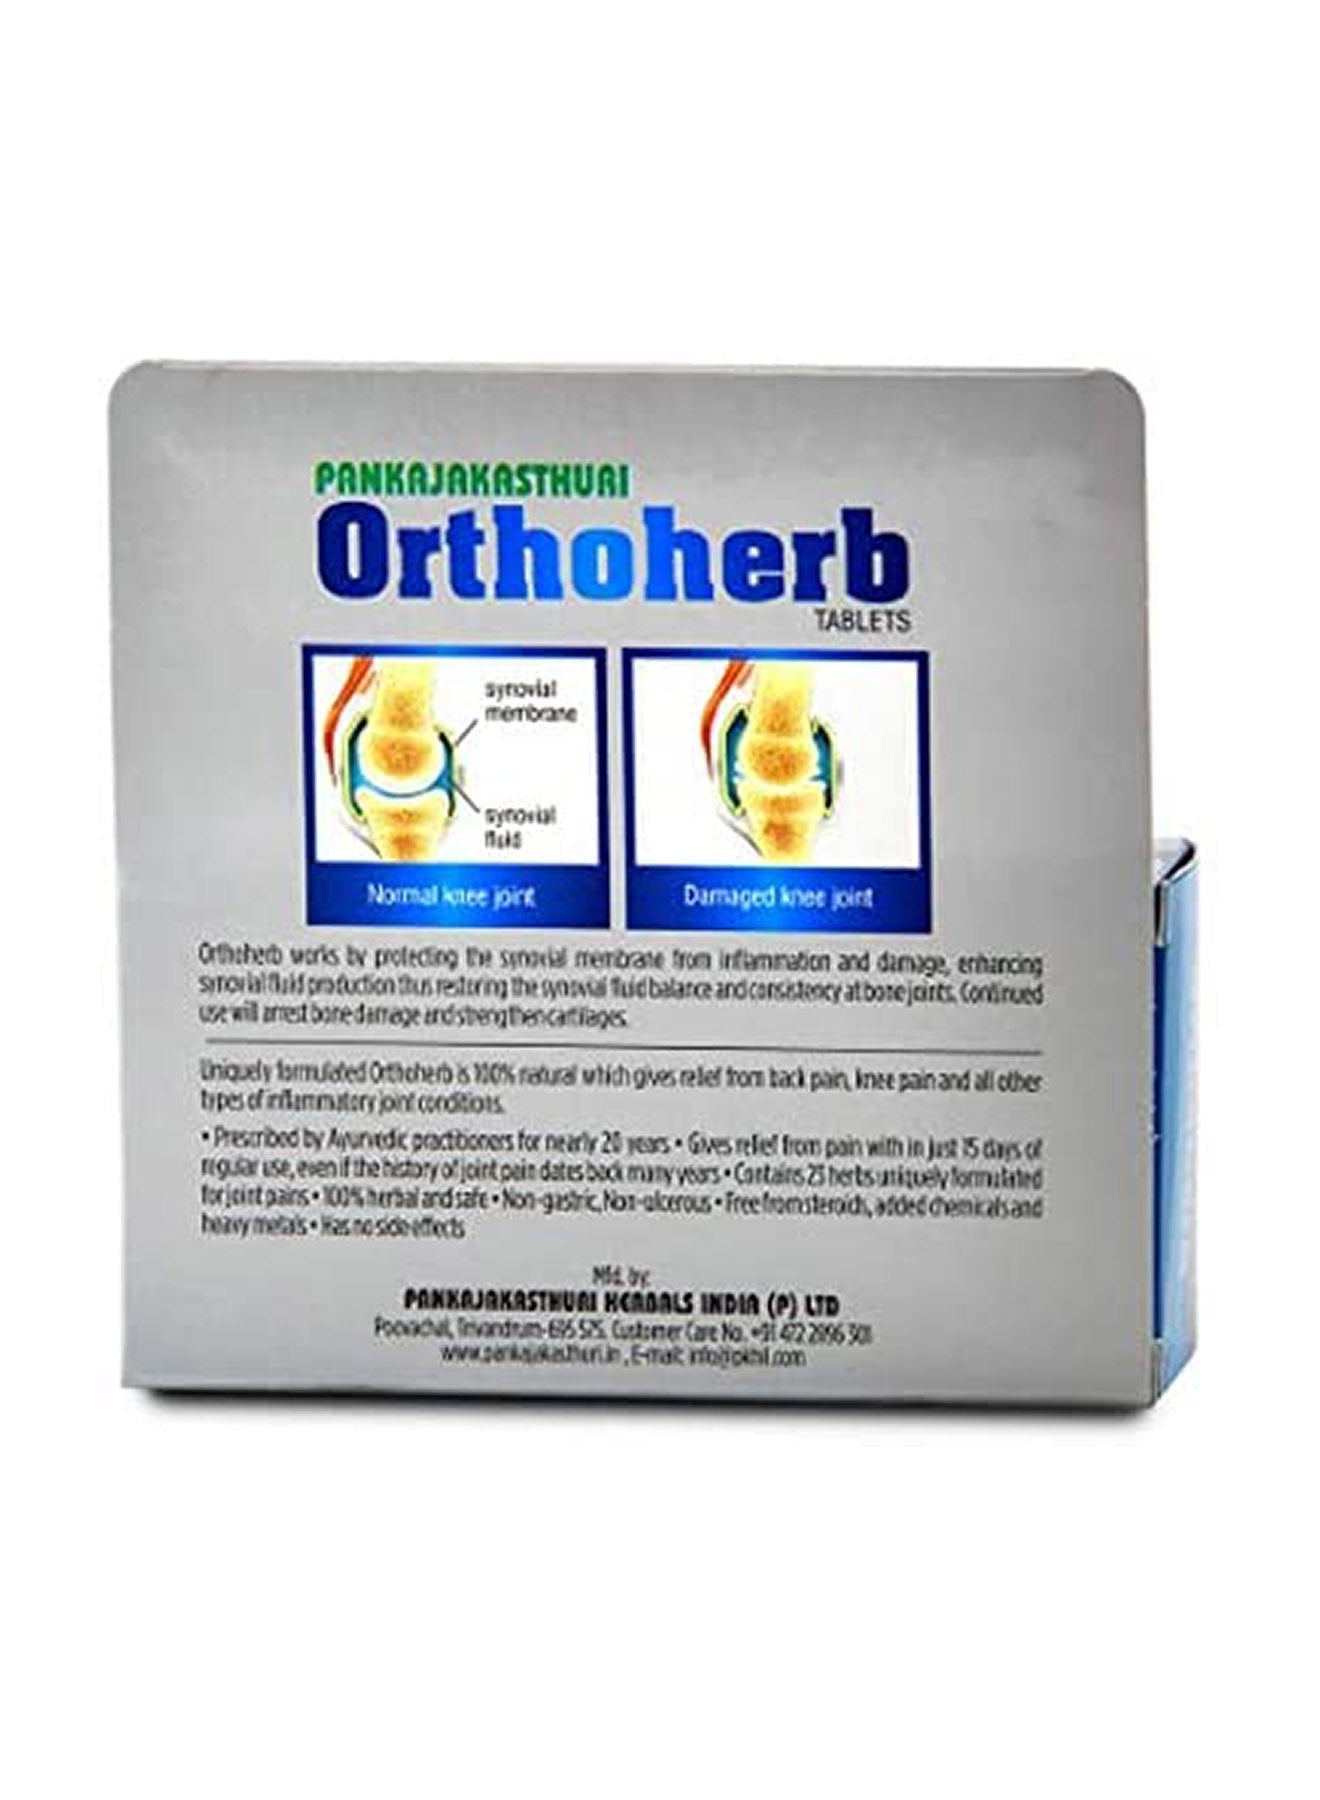 Pankajakasthuri Orthoherb 60 Tablets Value Pack of 12 